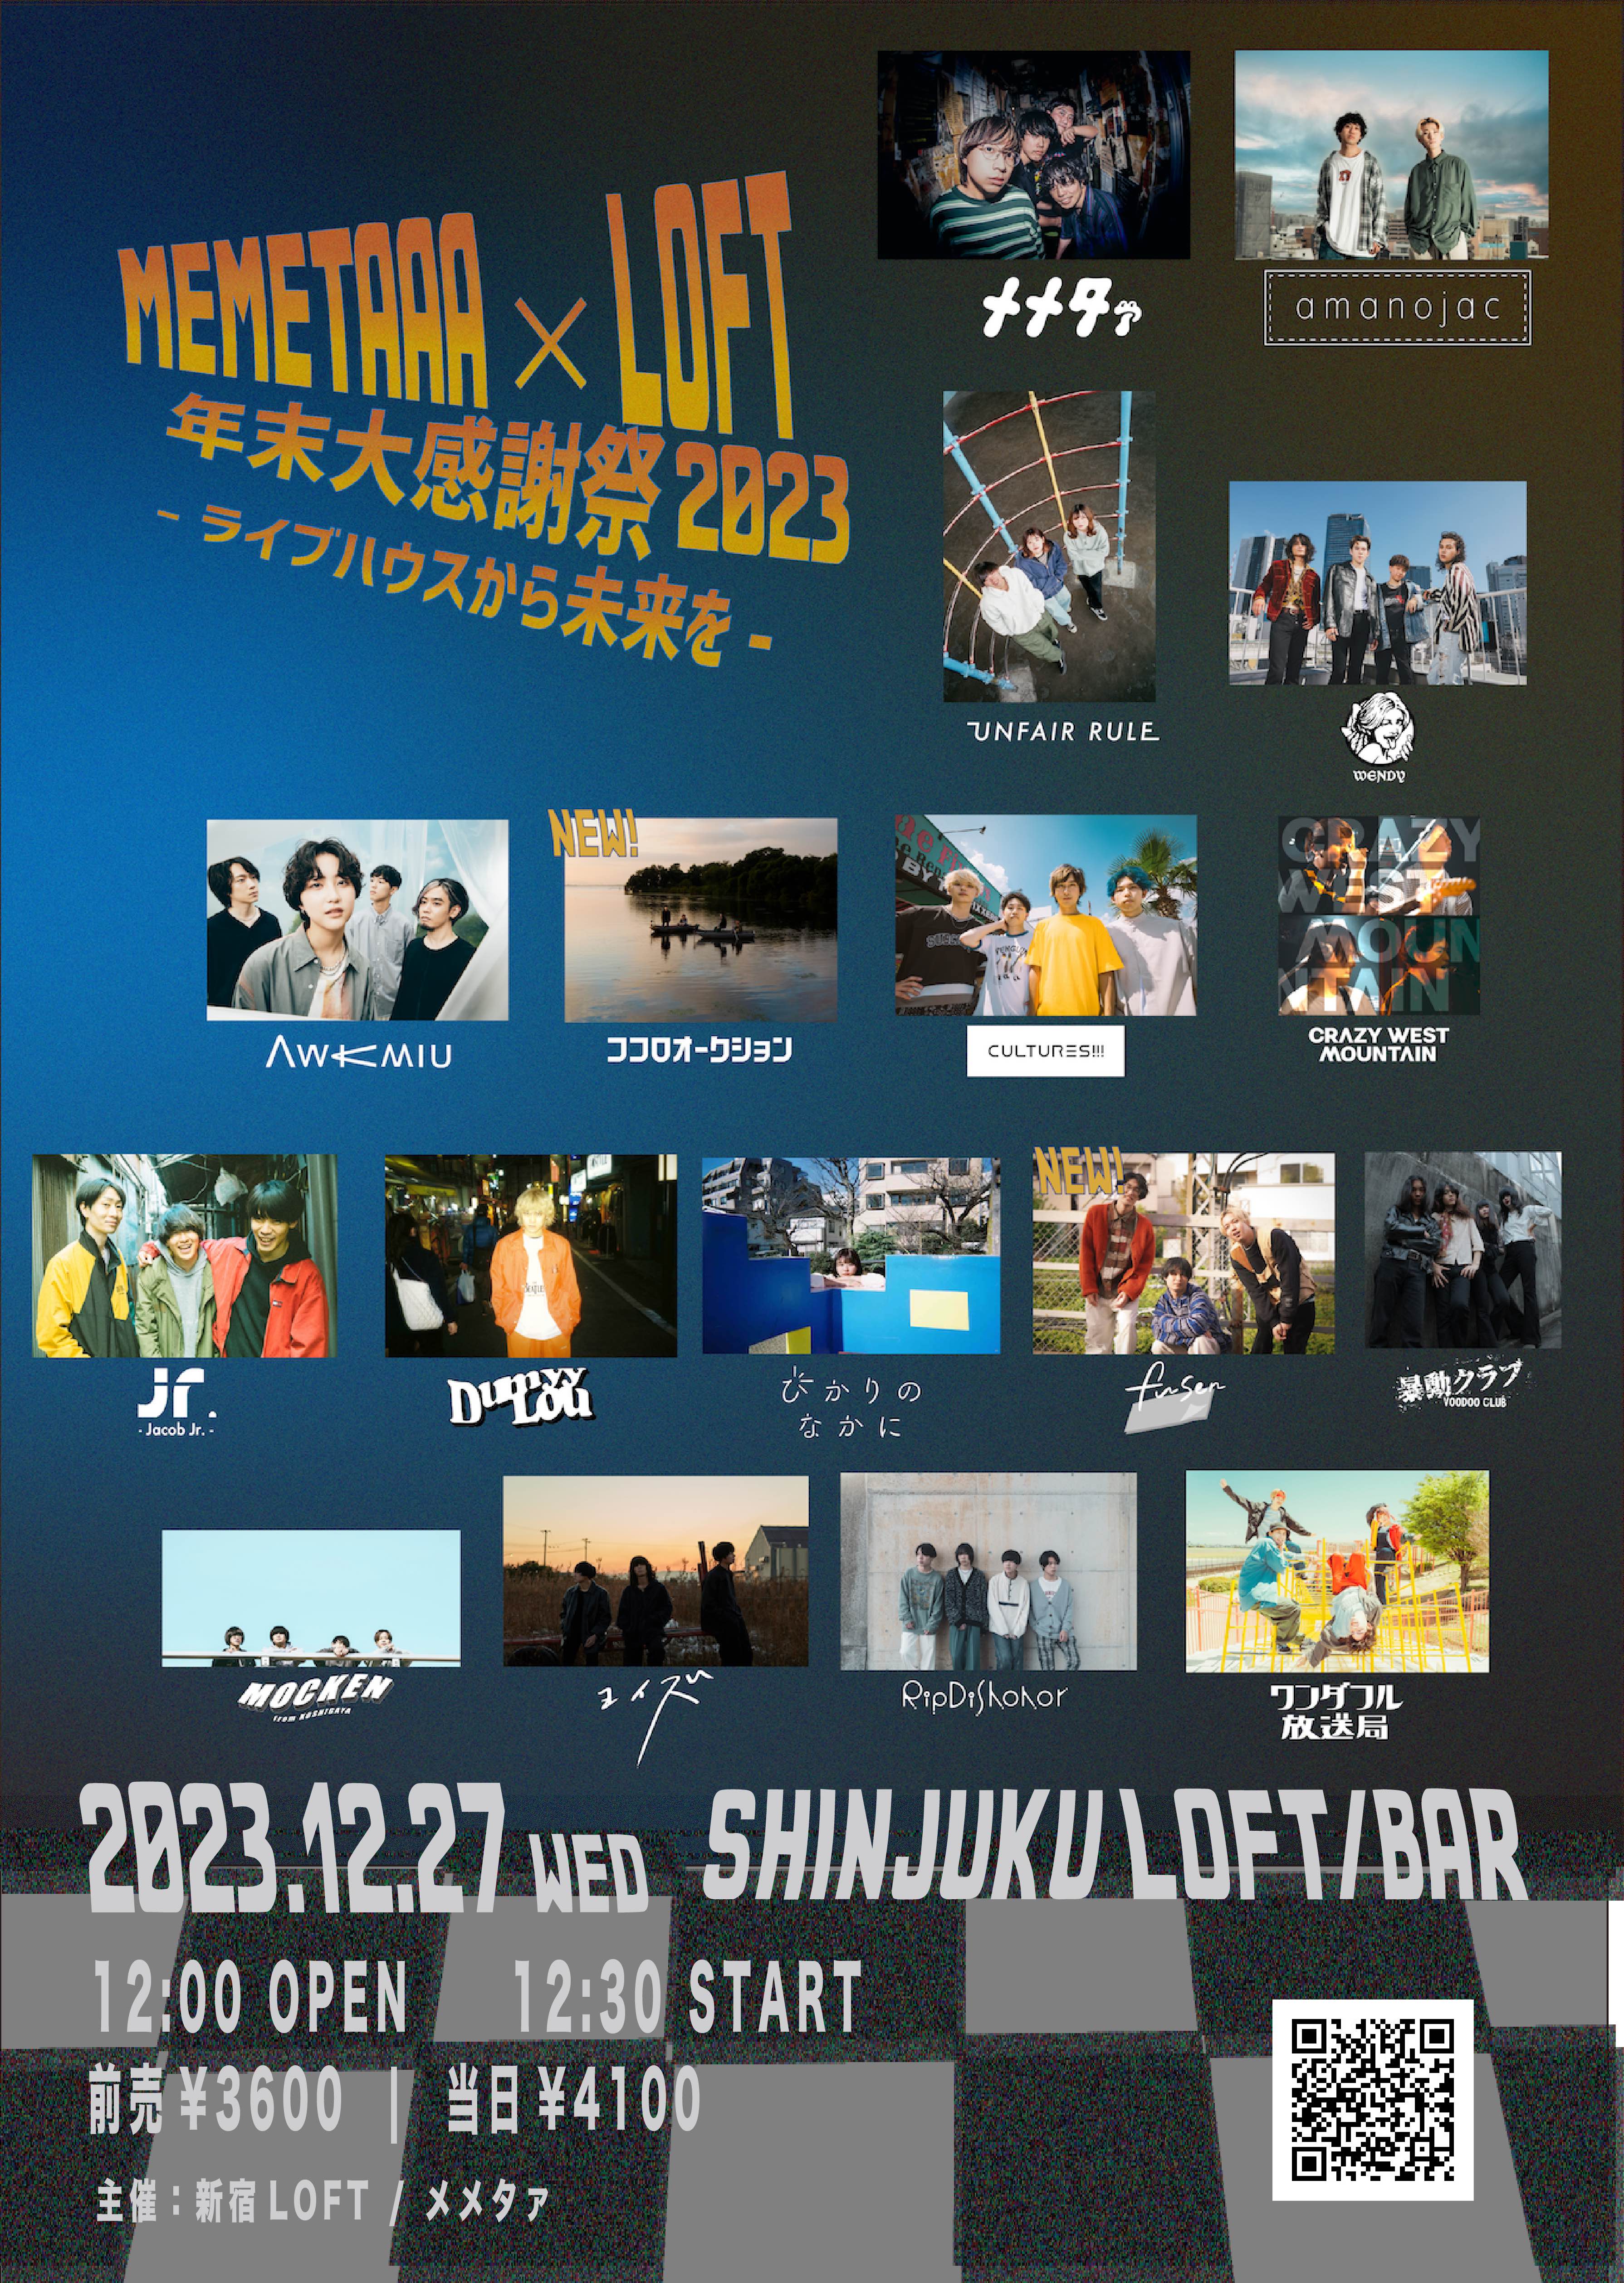 メメタァ×新宿ロフト presents 年末大感謝祭2023 〜ライブハウスから未来を〜